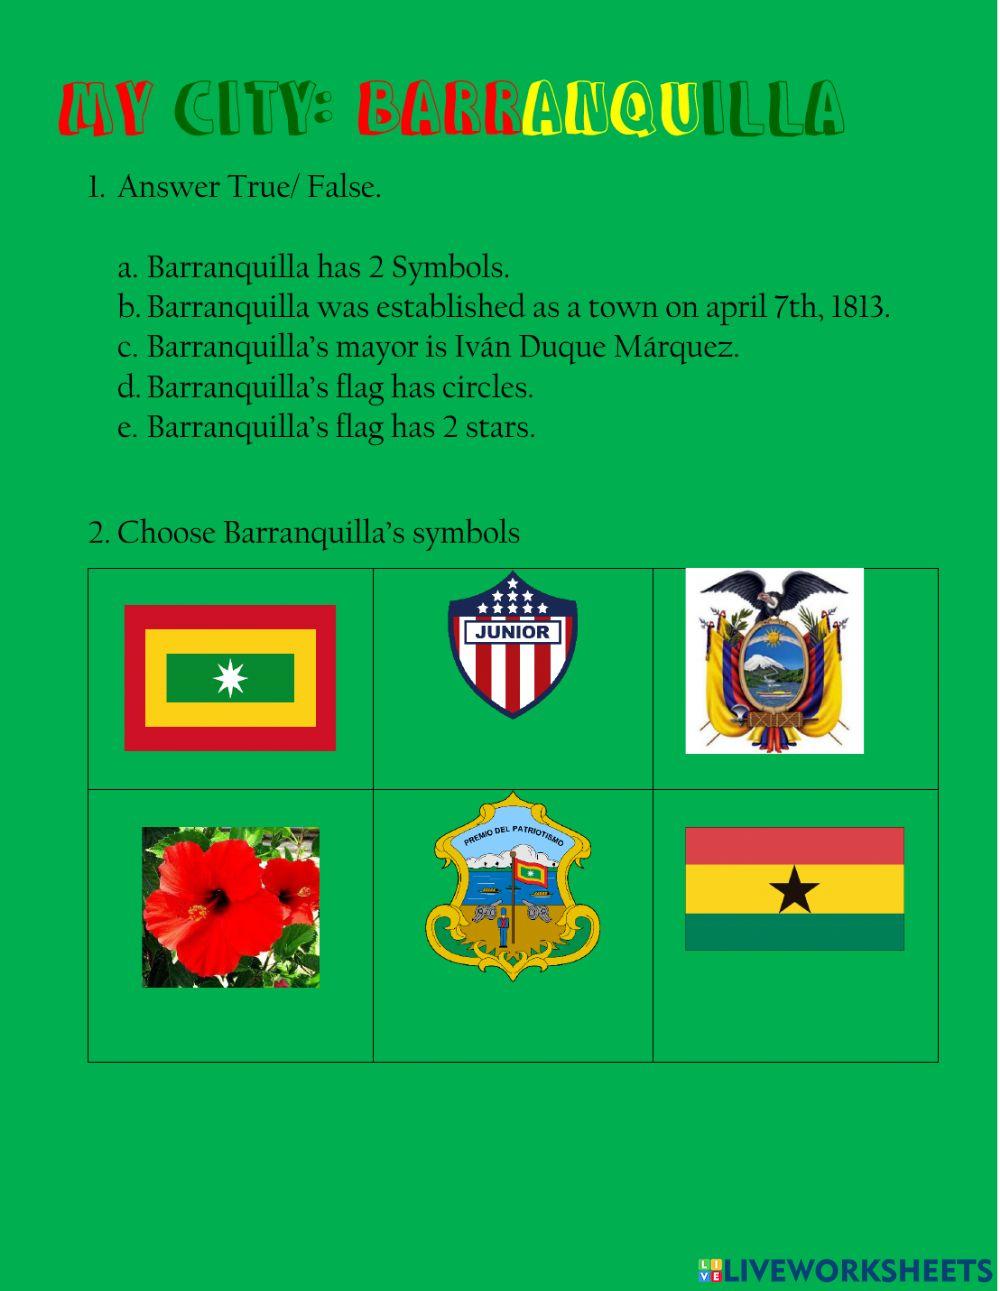 Barranquilla's symbols